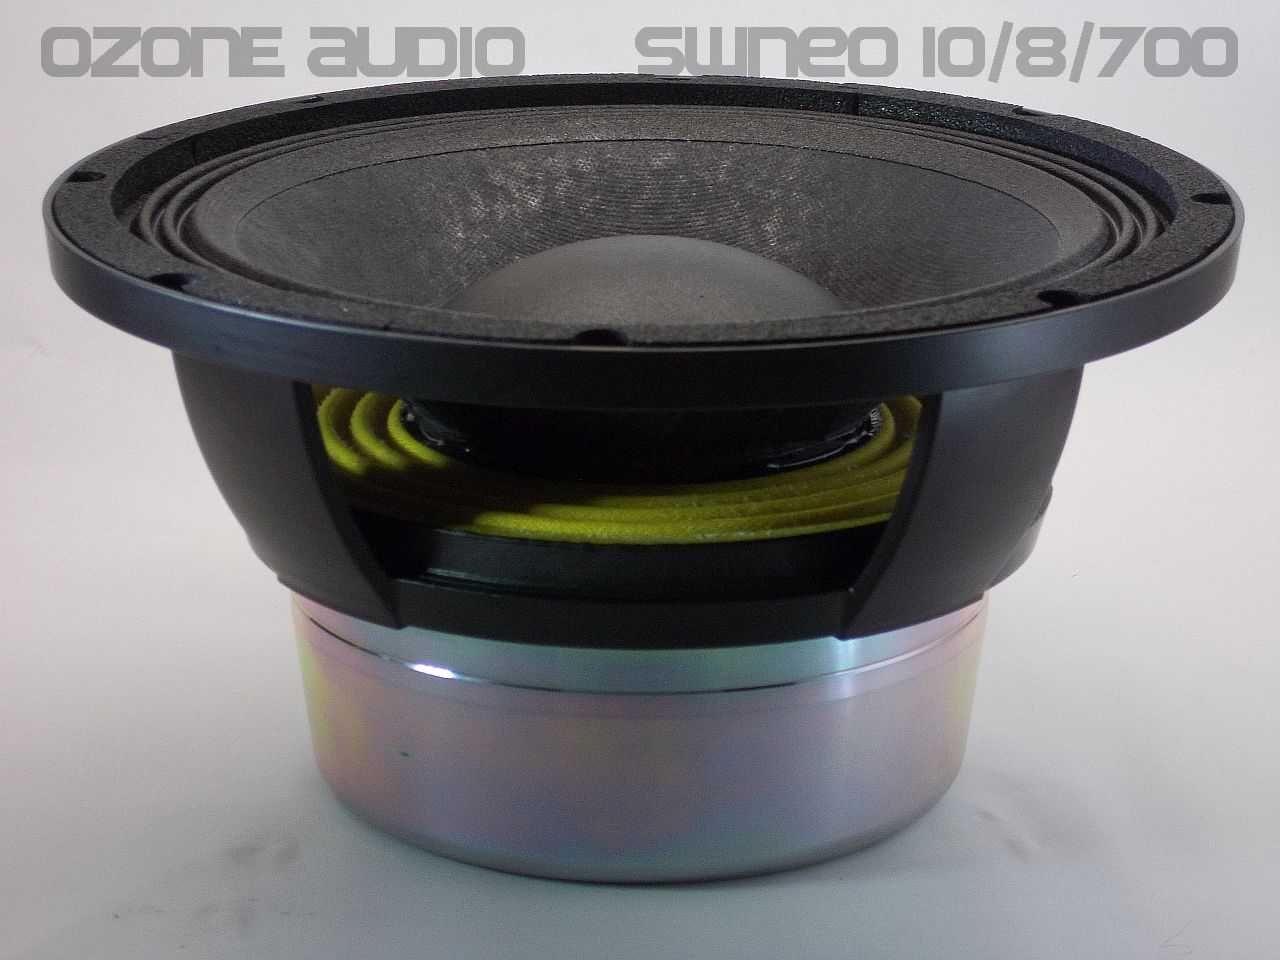 Ozone audio SwNeo 10/8/700 głosnik niskotonowy basowy